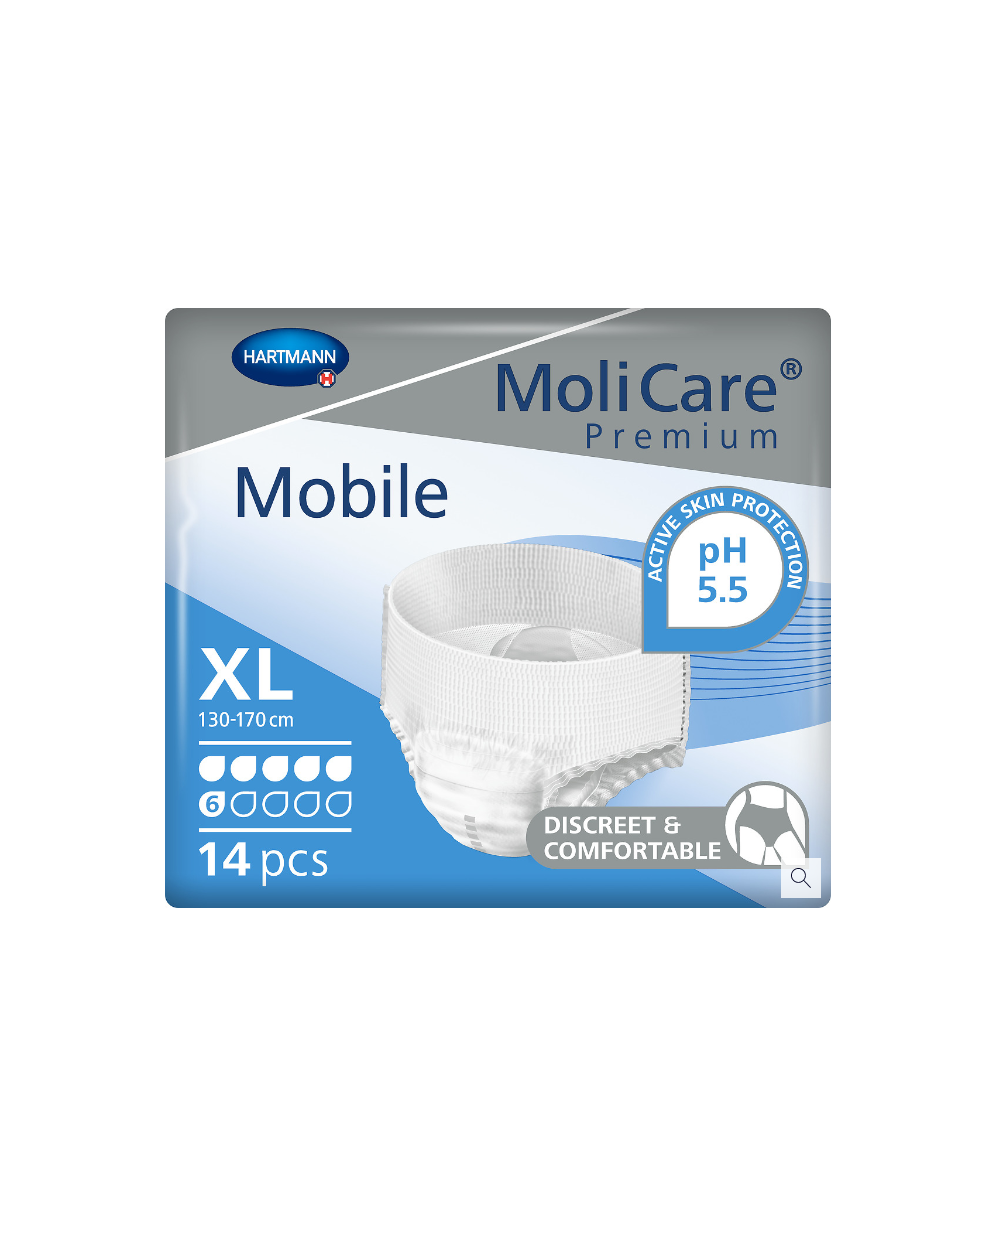 Molicare premium mobile 6d xl p14